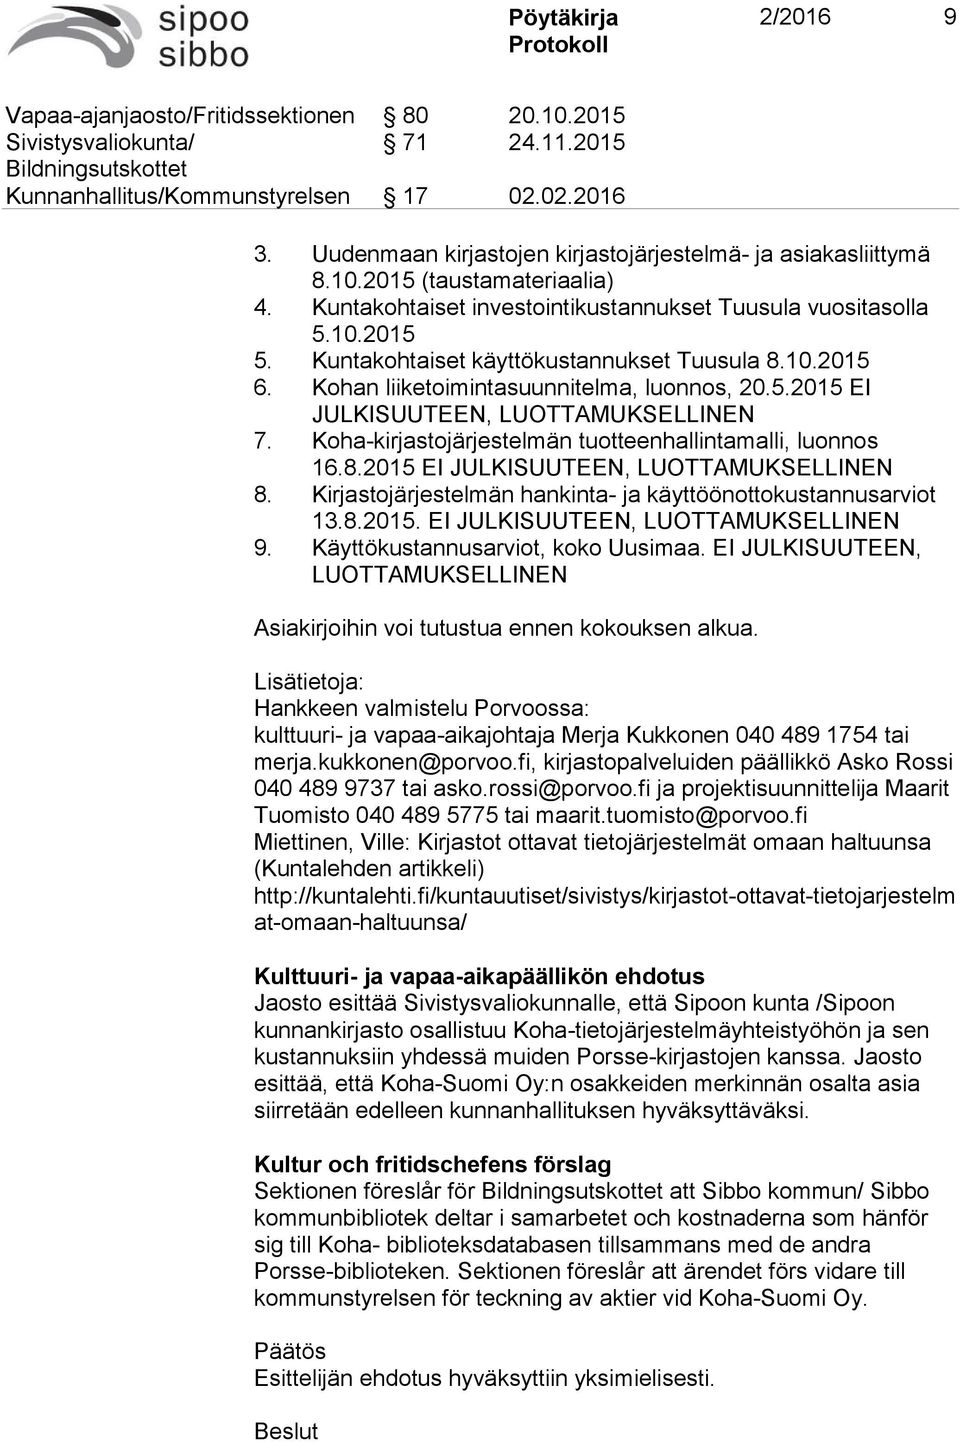 Kuntakohtaiset käyttökustannukset Tuusula 8.10.2015 6. Kohan liiketoimintasuunnitelma, luonnos, 20.5.2015 EI JULKISUUTEEN, LUOTTAMUKSELLINEN 7.